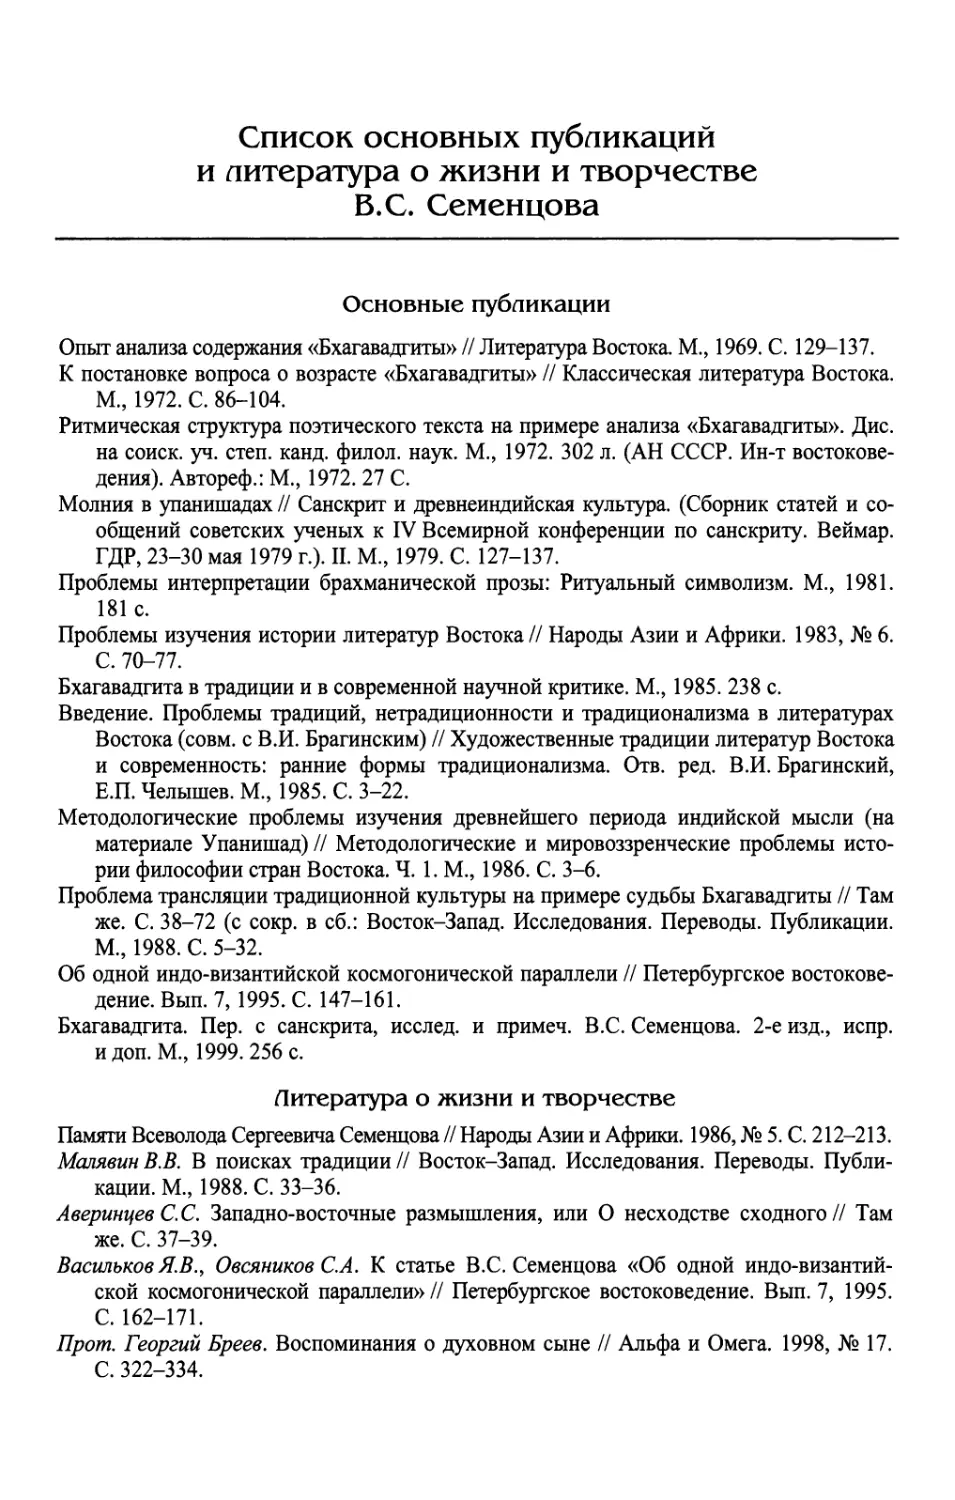 Список основных трудов и литература о жизни и творчестве B.C. Семенцова